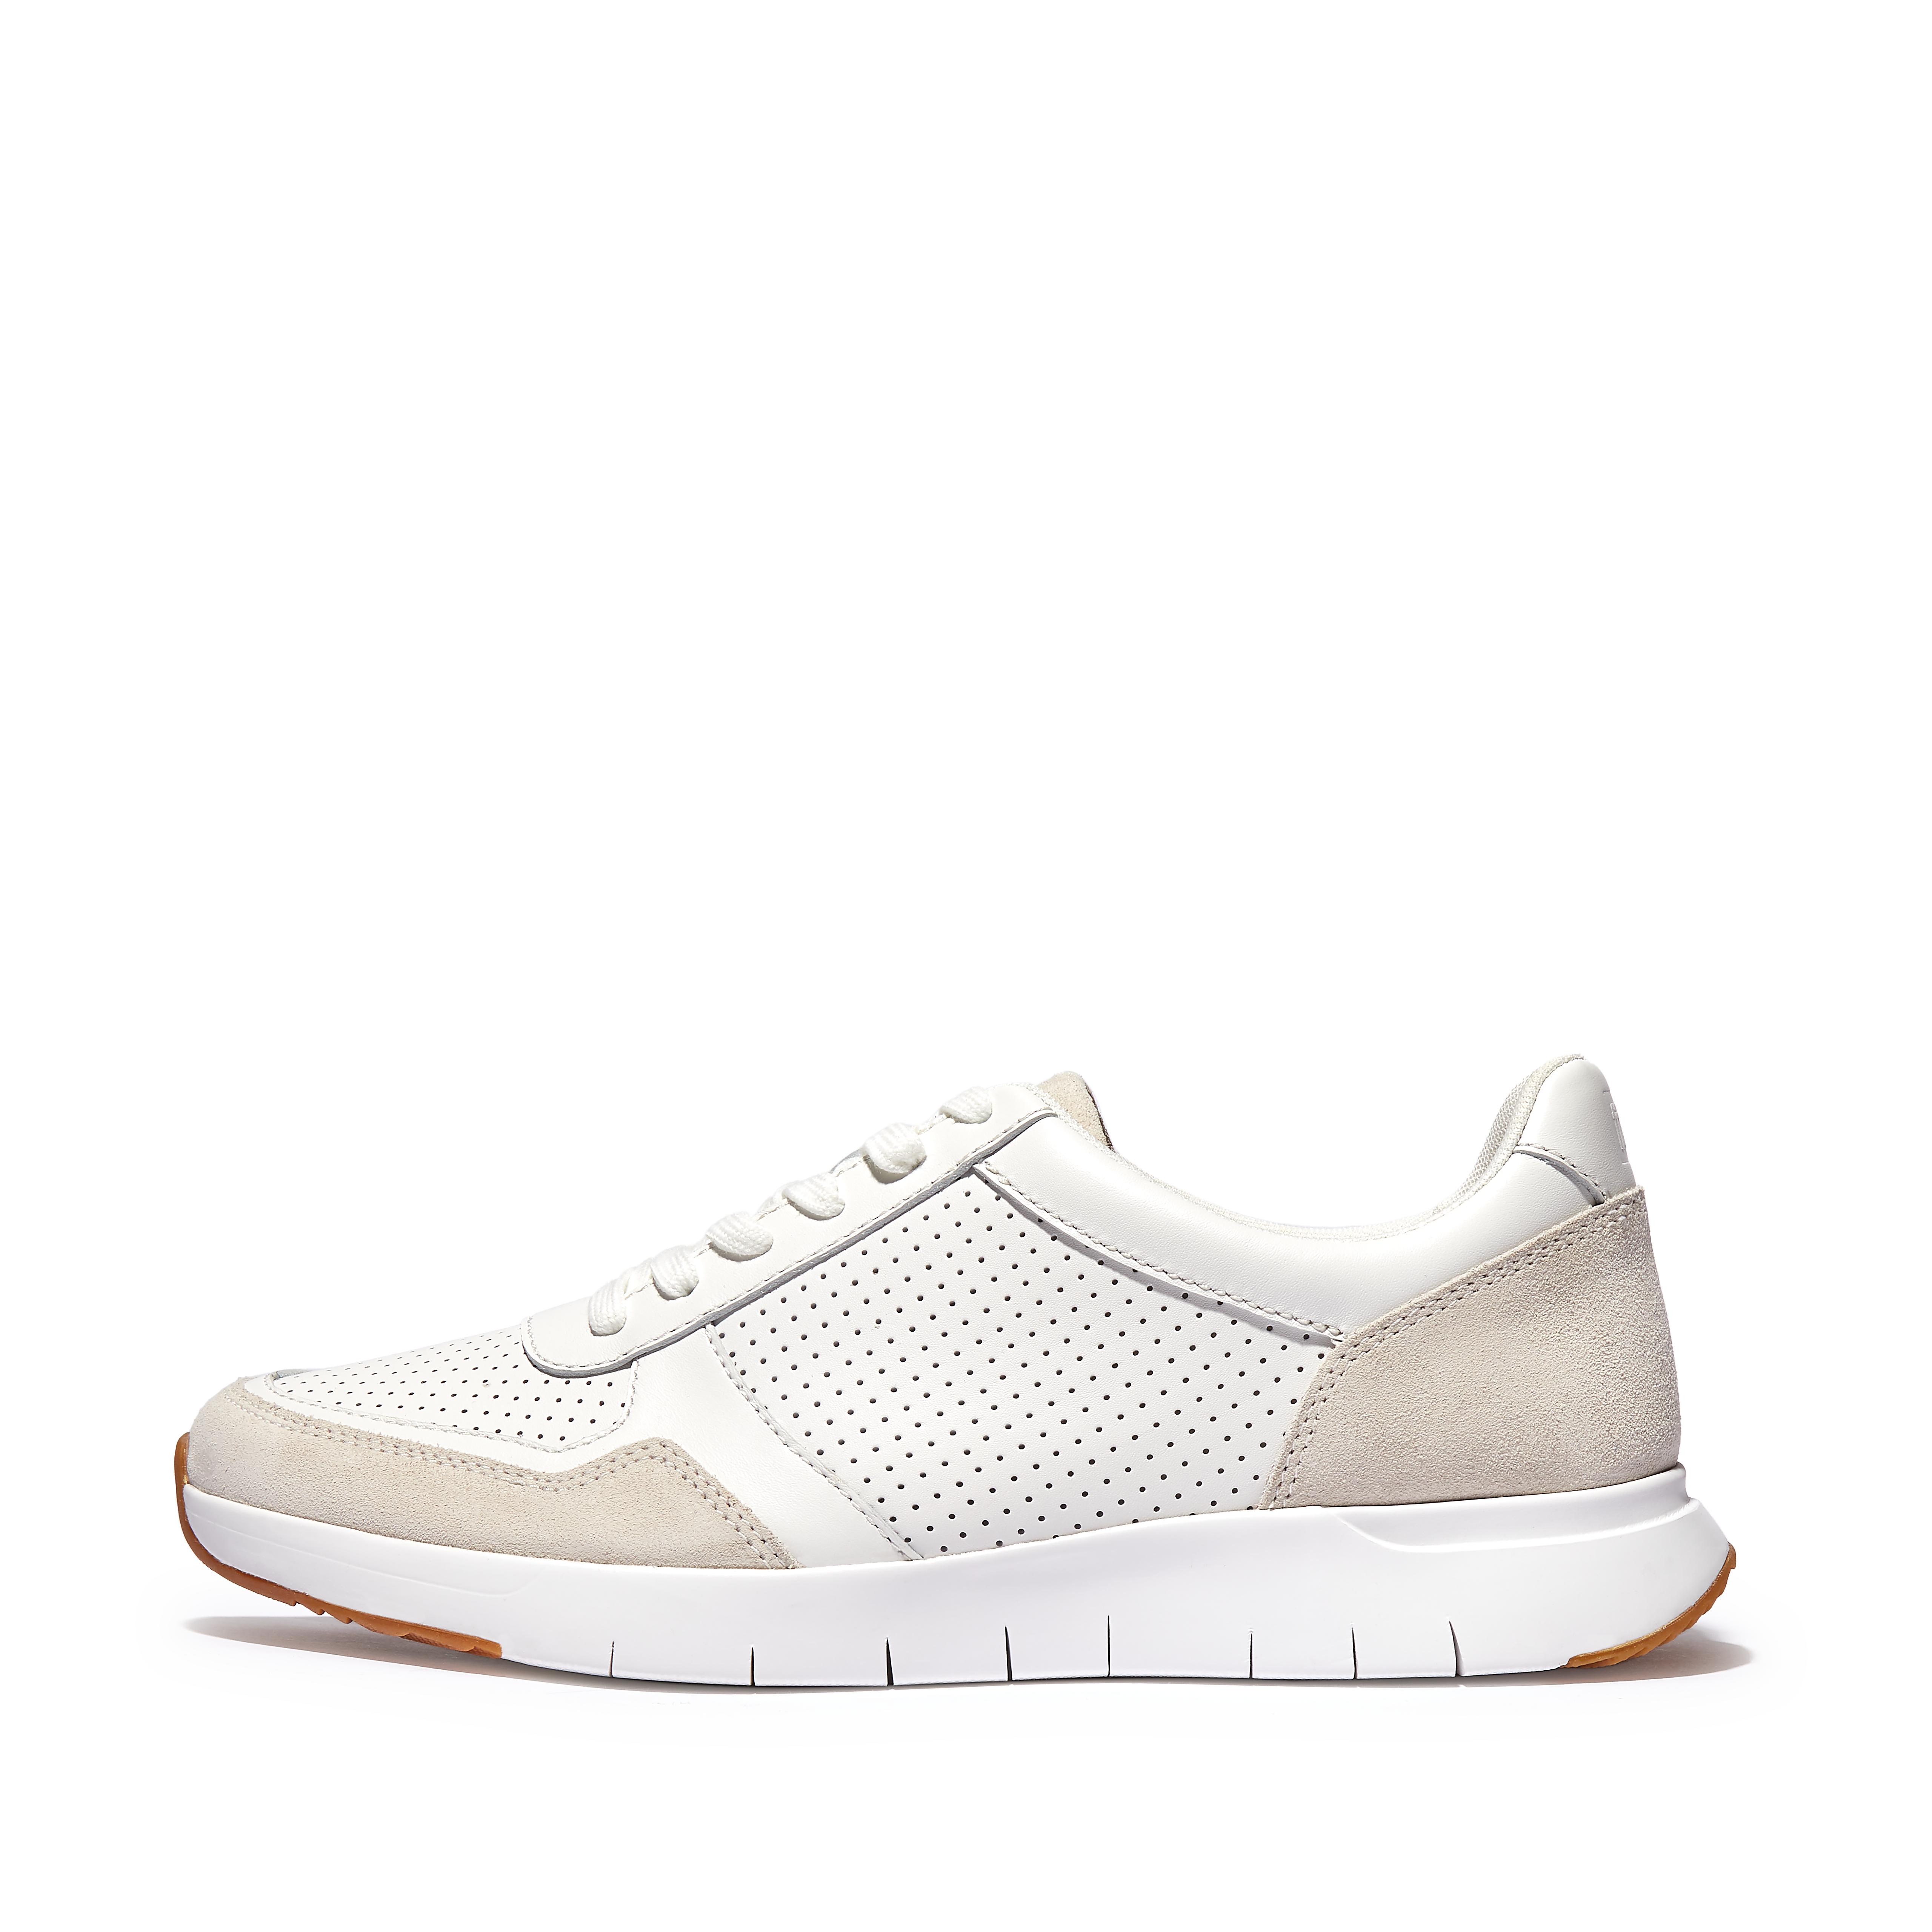 핏플랍 스니커즈 핏플랍 Fitflop Leather-Mix Sneakers,Urban White